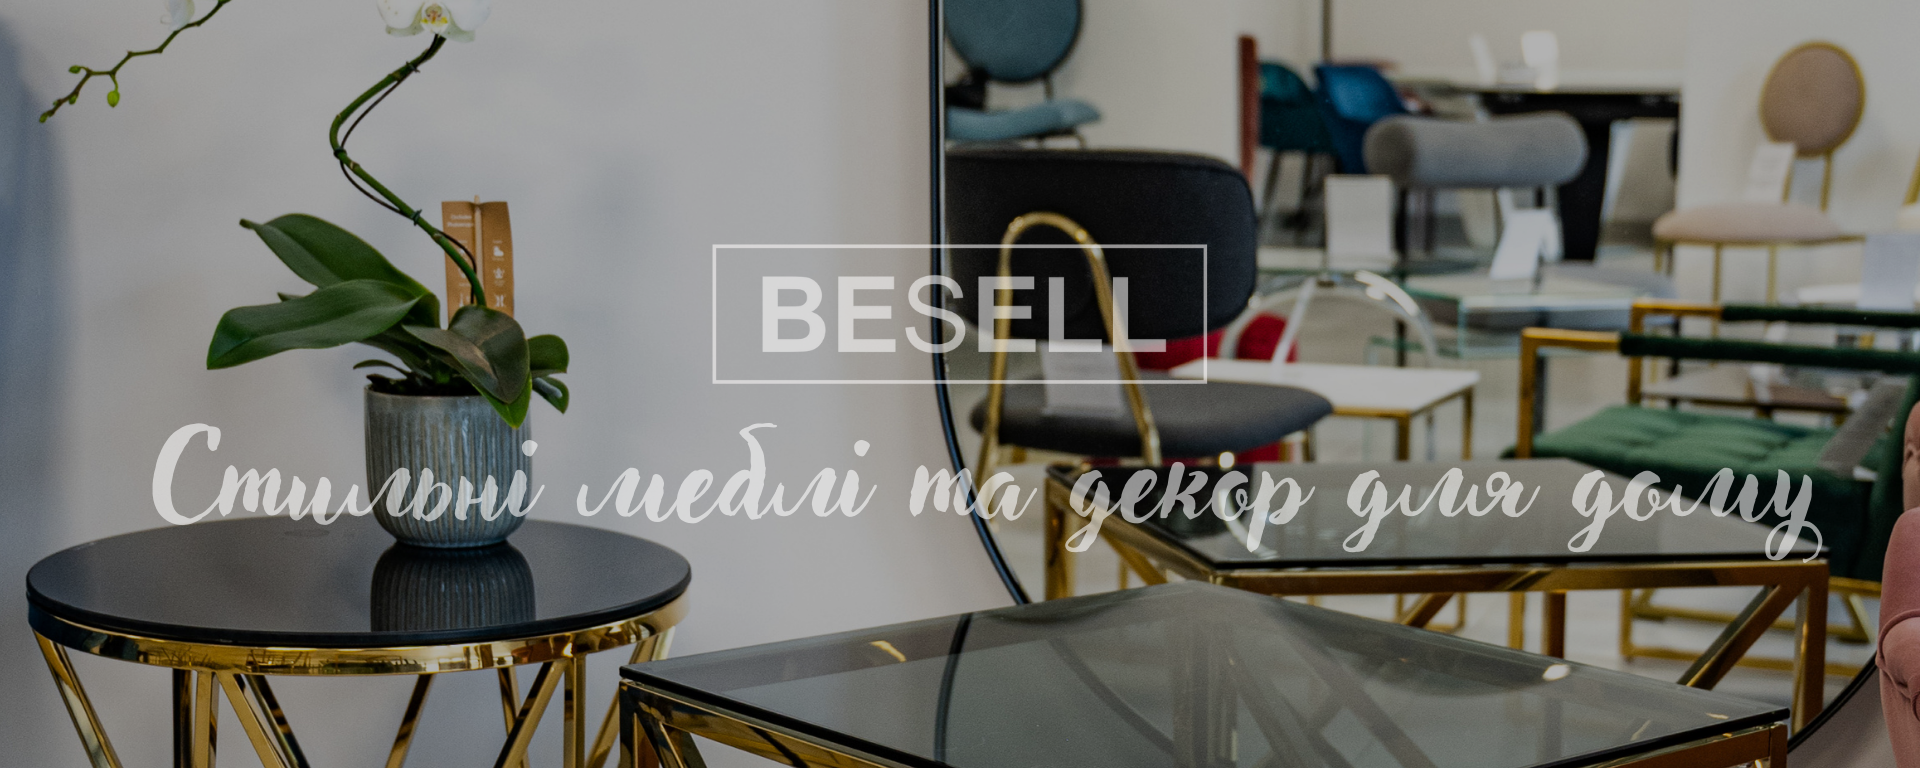 Мебель для дома и детские товары Besell